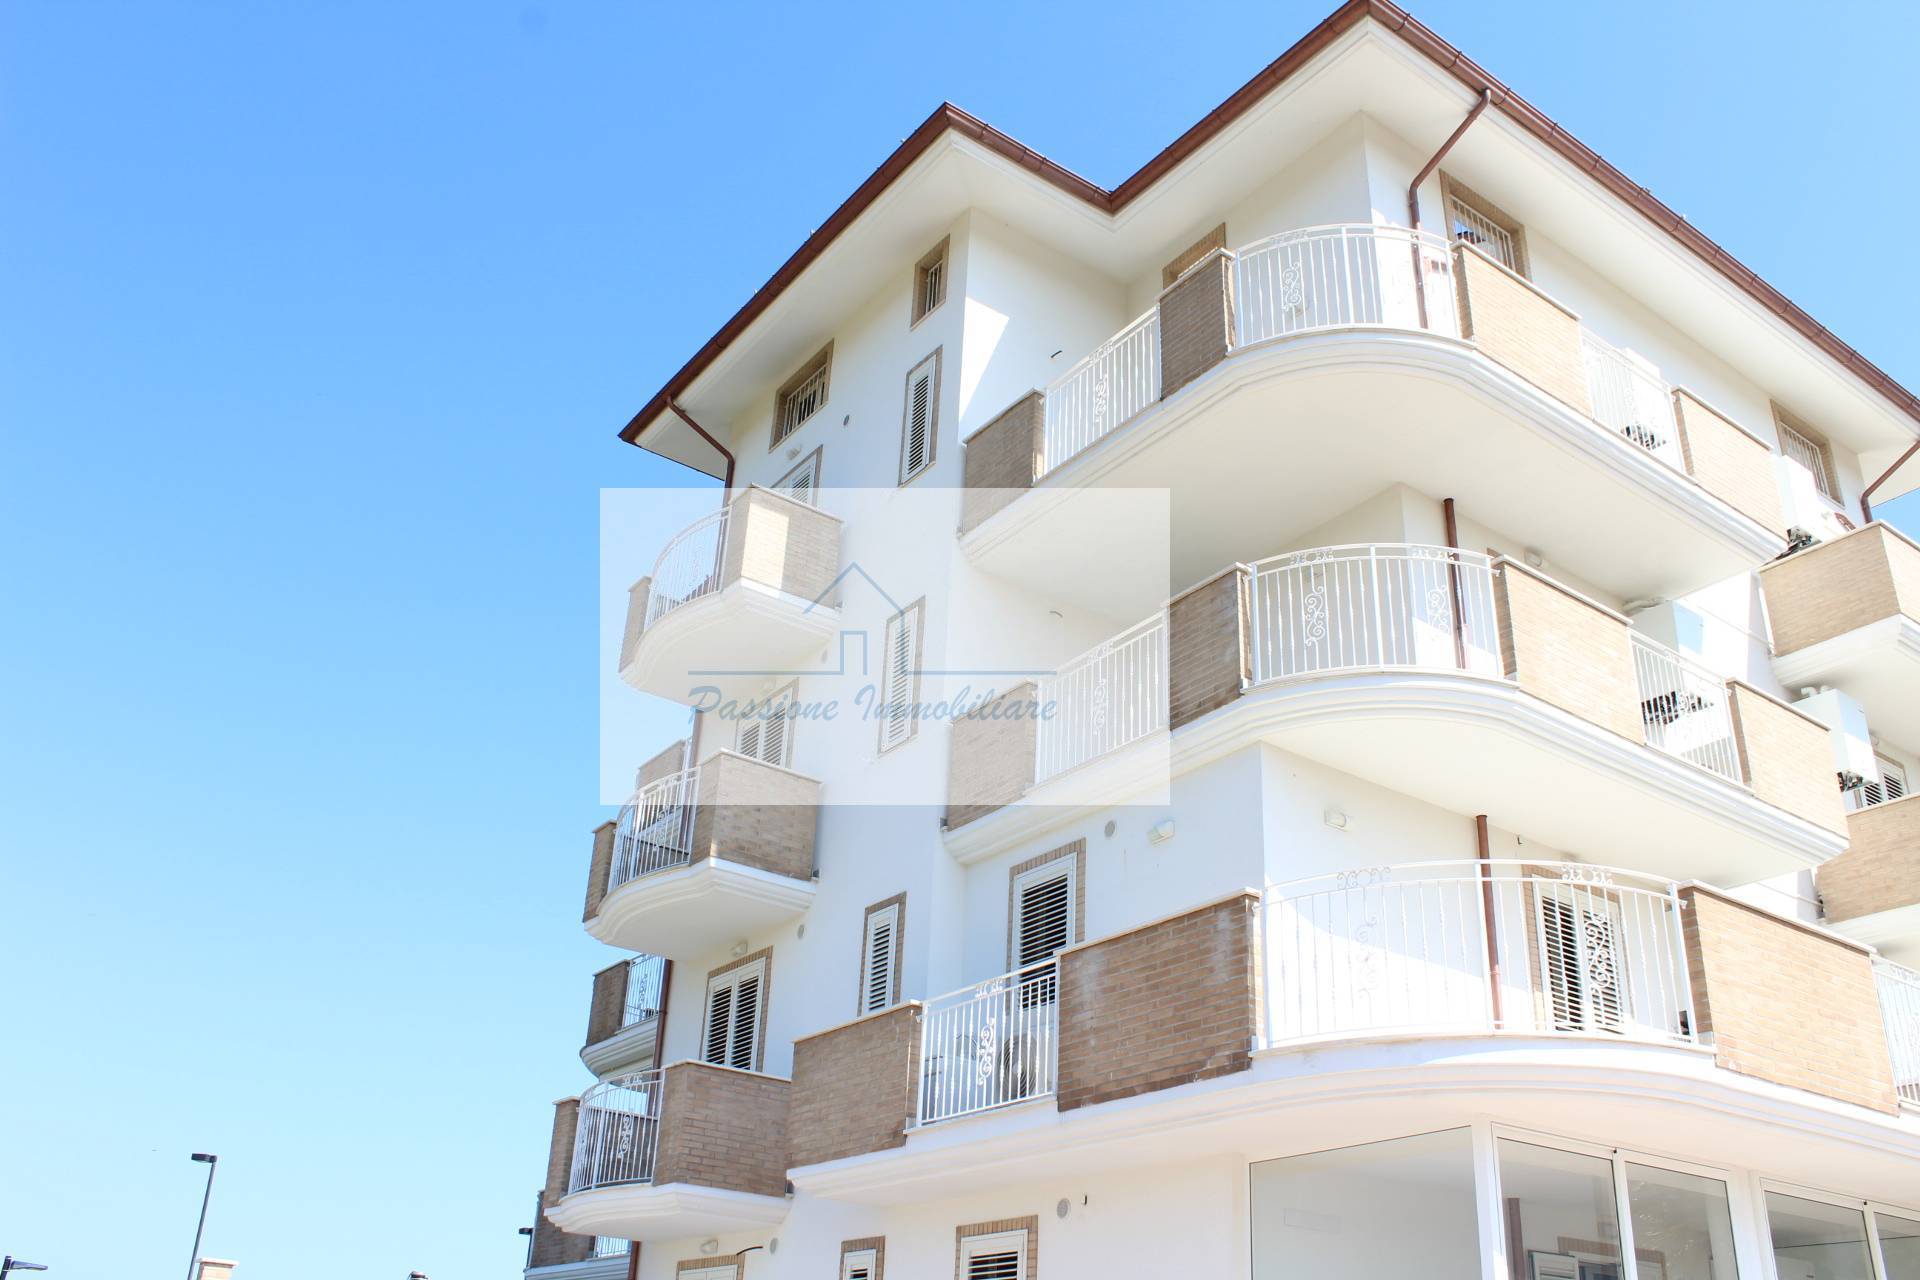 Appartamento in vendita a Giulianova, 7 locali, prezzo € 315.000 | PortaleAgenzieImmobiliari.it